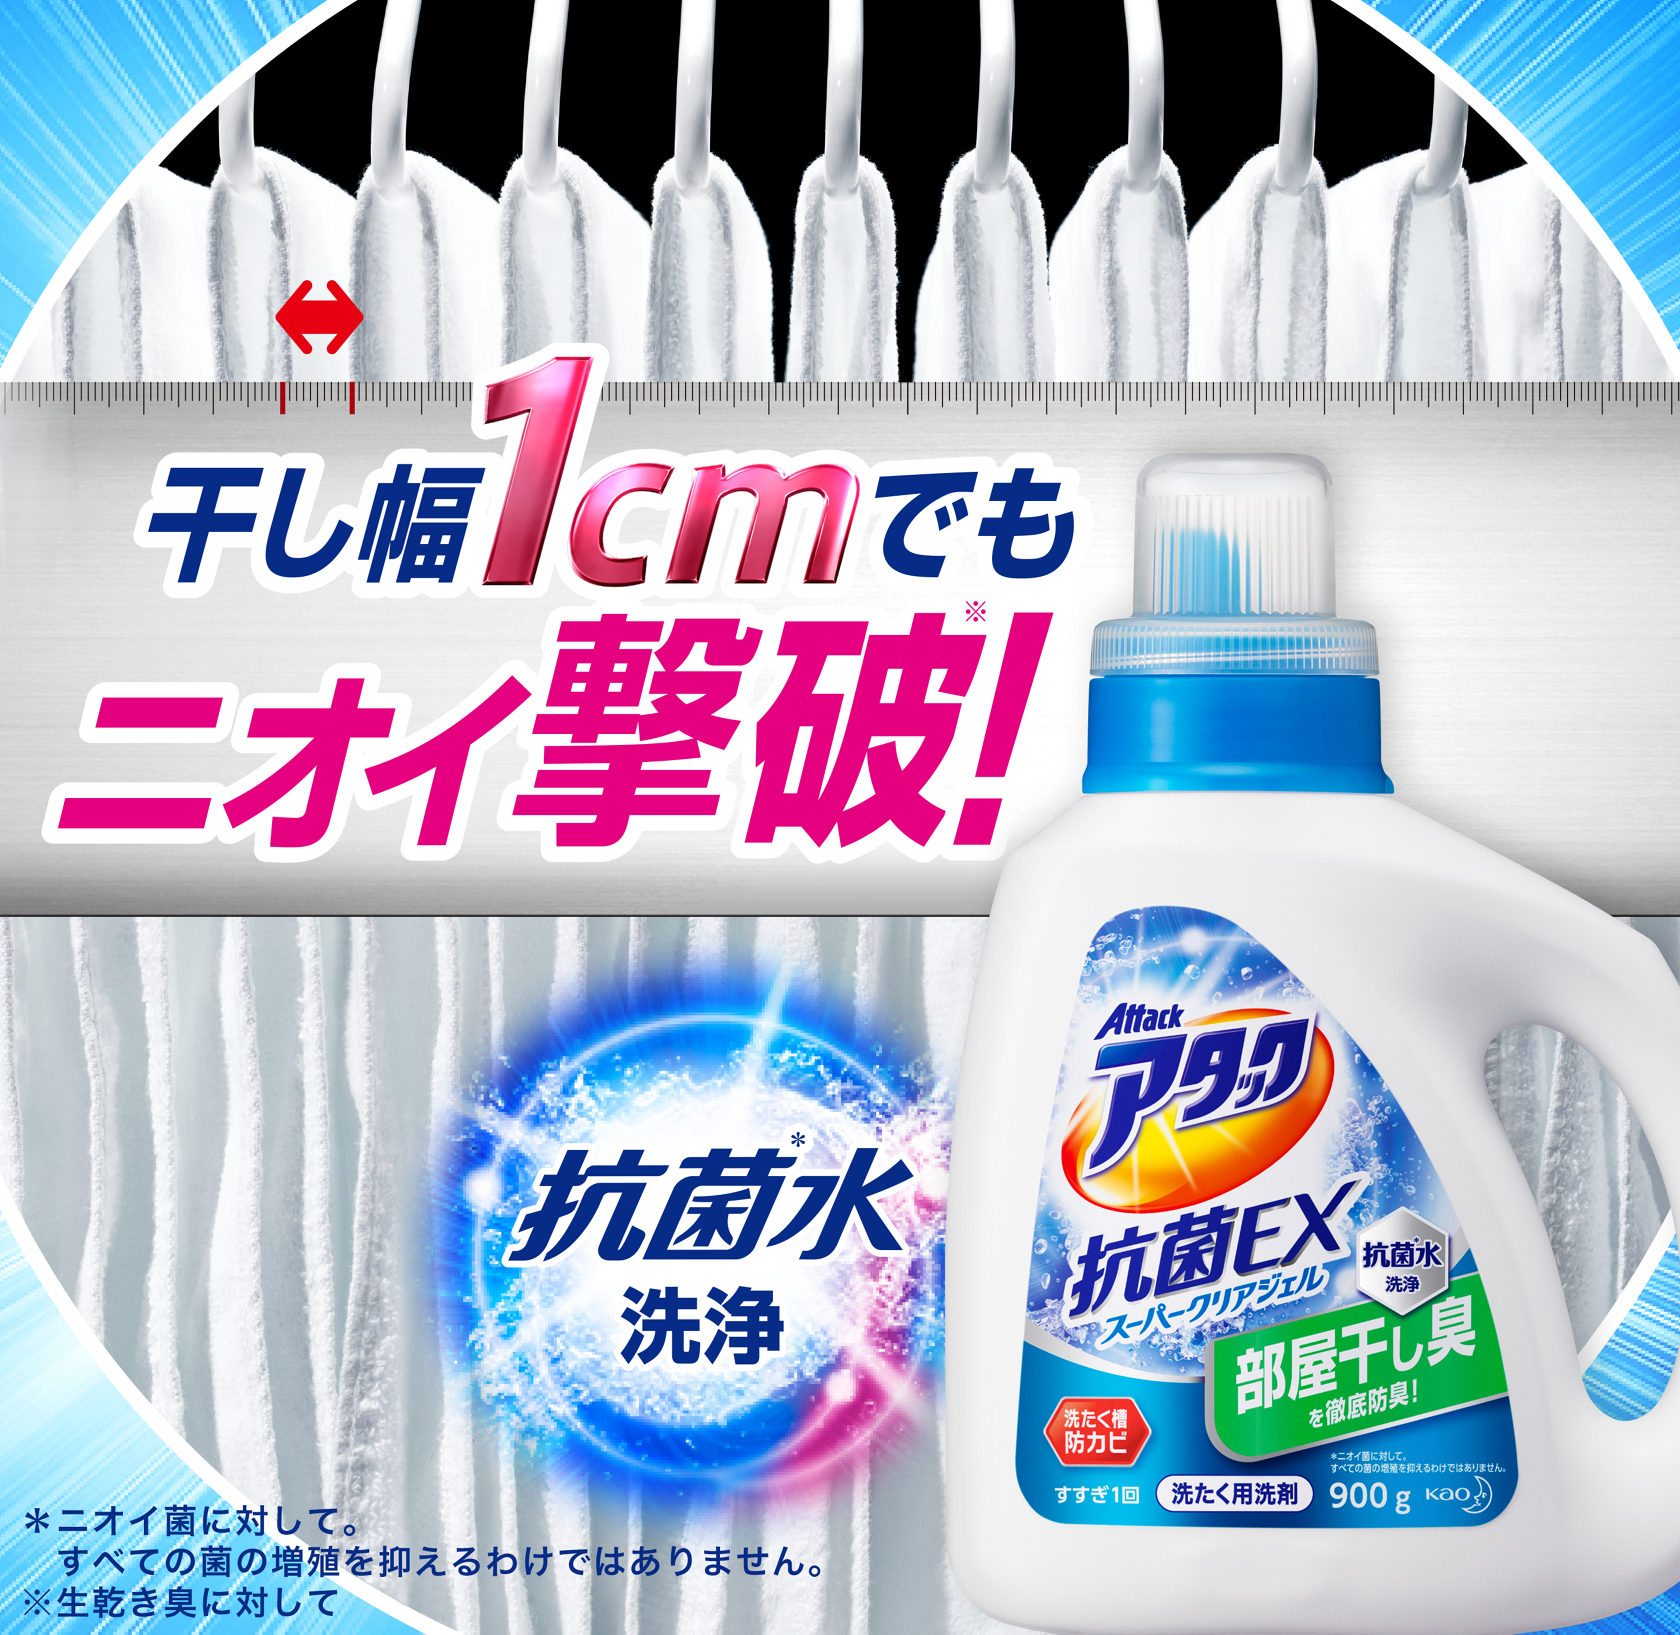 洗濯用洗剤アタック 抗菌EX スーパークリアジェル | 花王株式会社